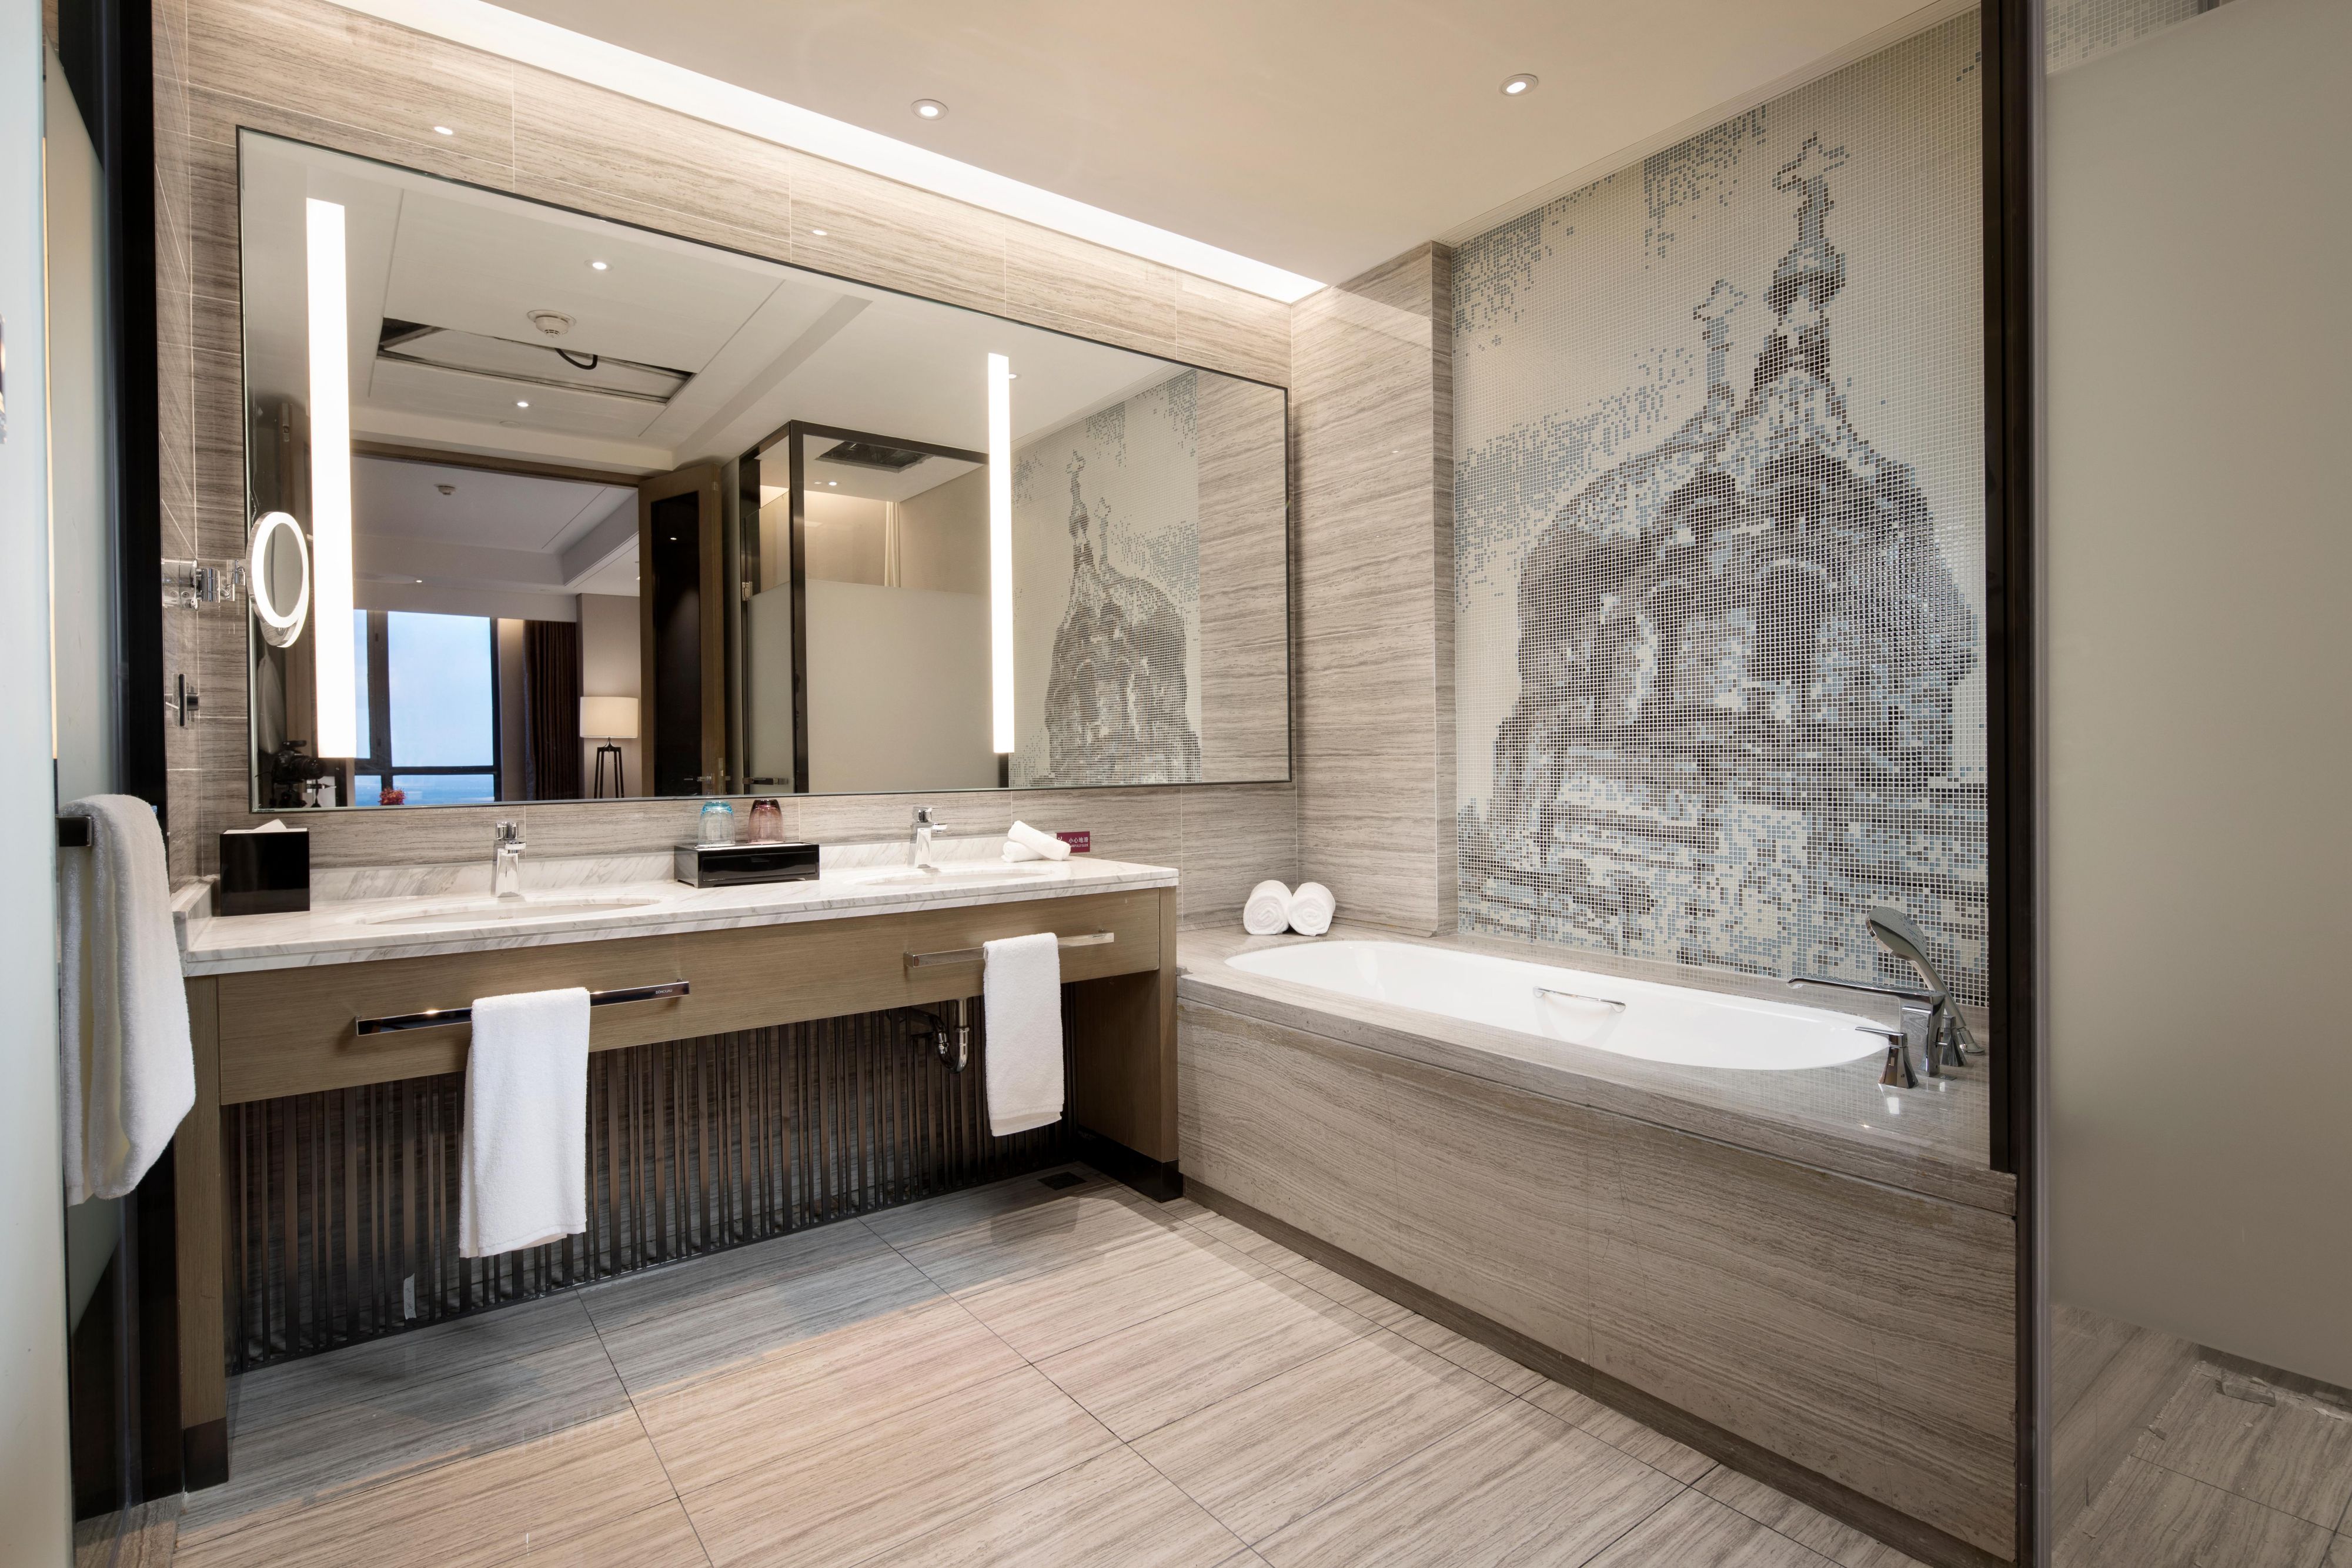 Crowne Plaza Superior Suite Bathroom